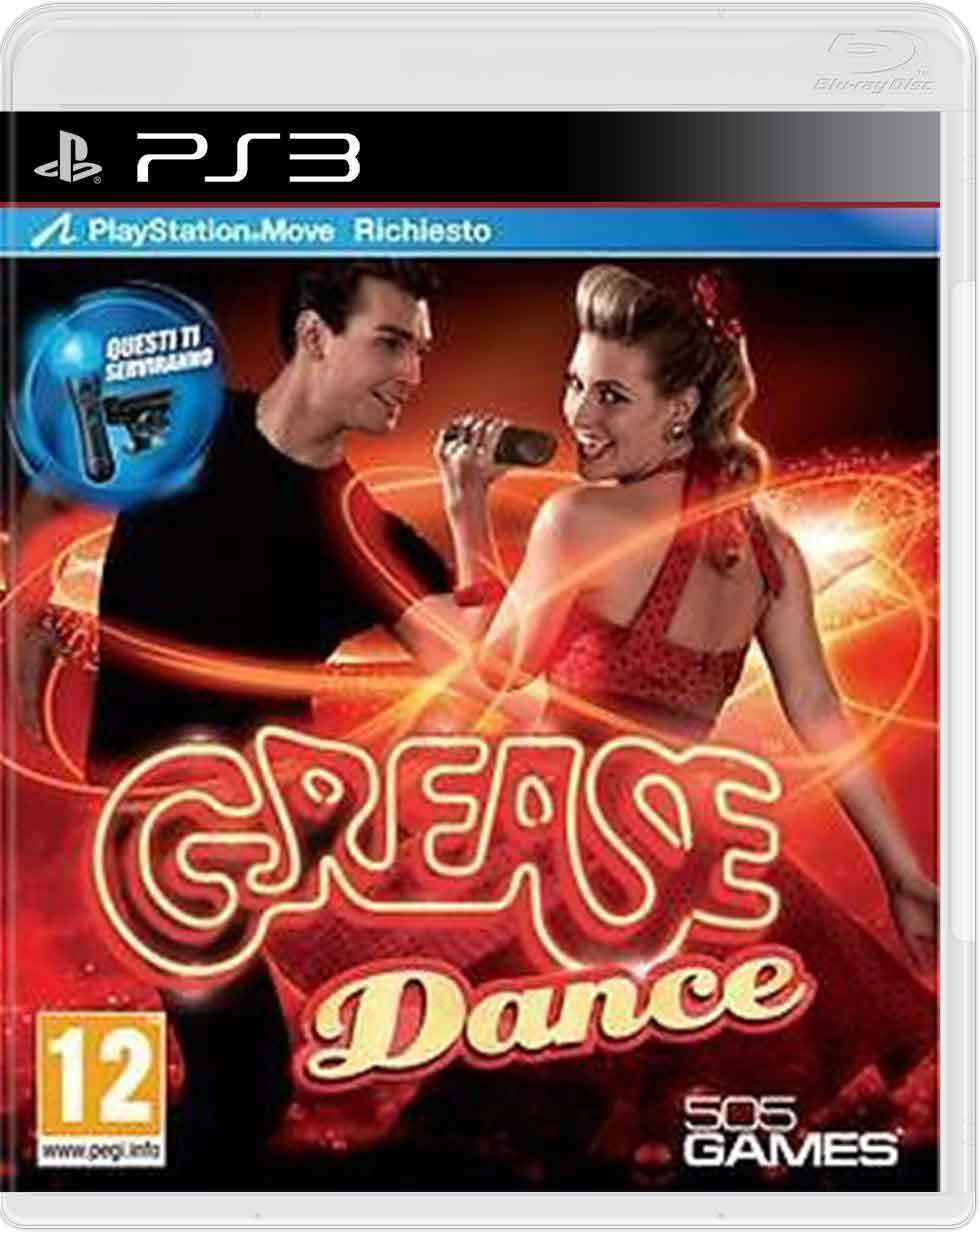 GREASE DANCE GIOCO PS3 PLAYSTATION 3  NUOVO SIGILLATO! VERSIONE ITALIANA!